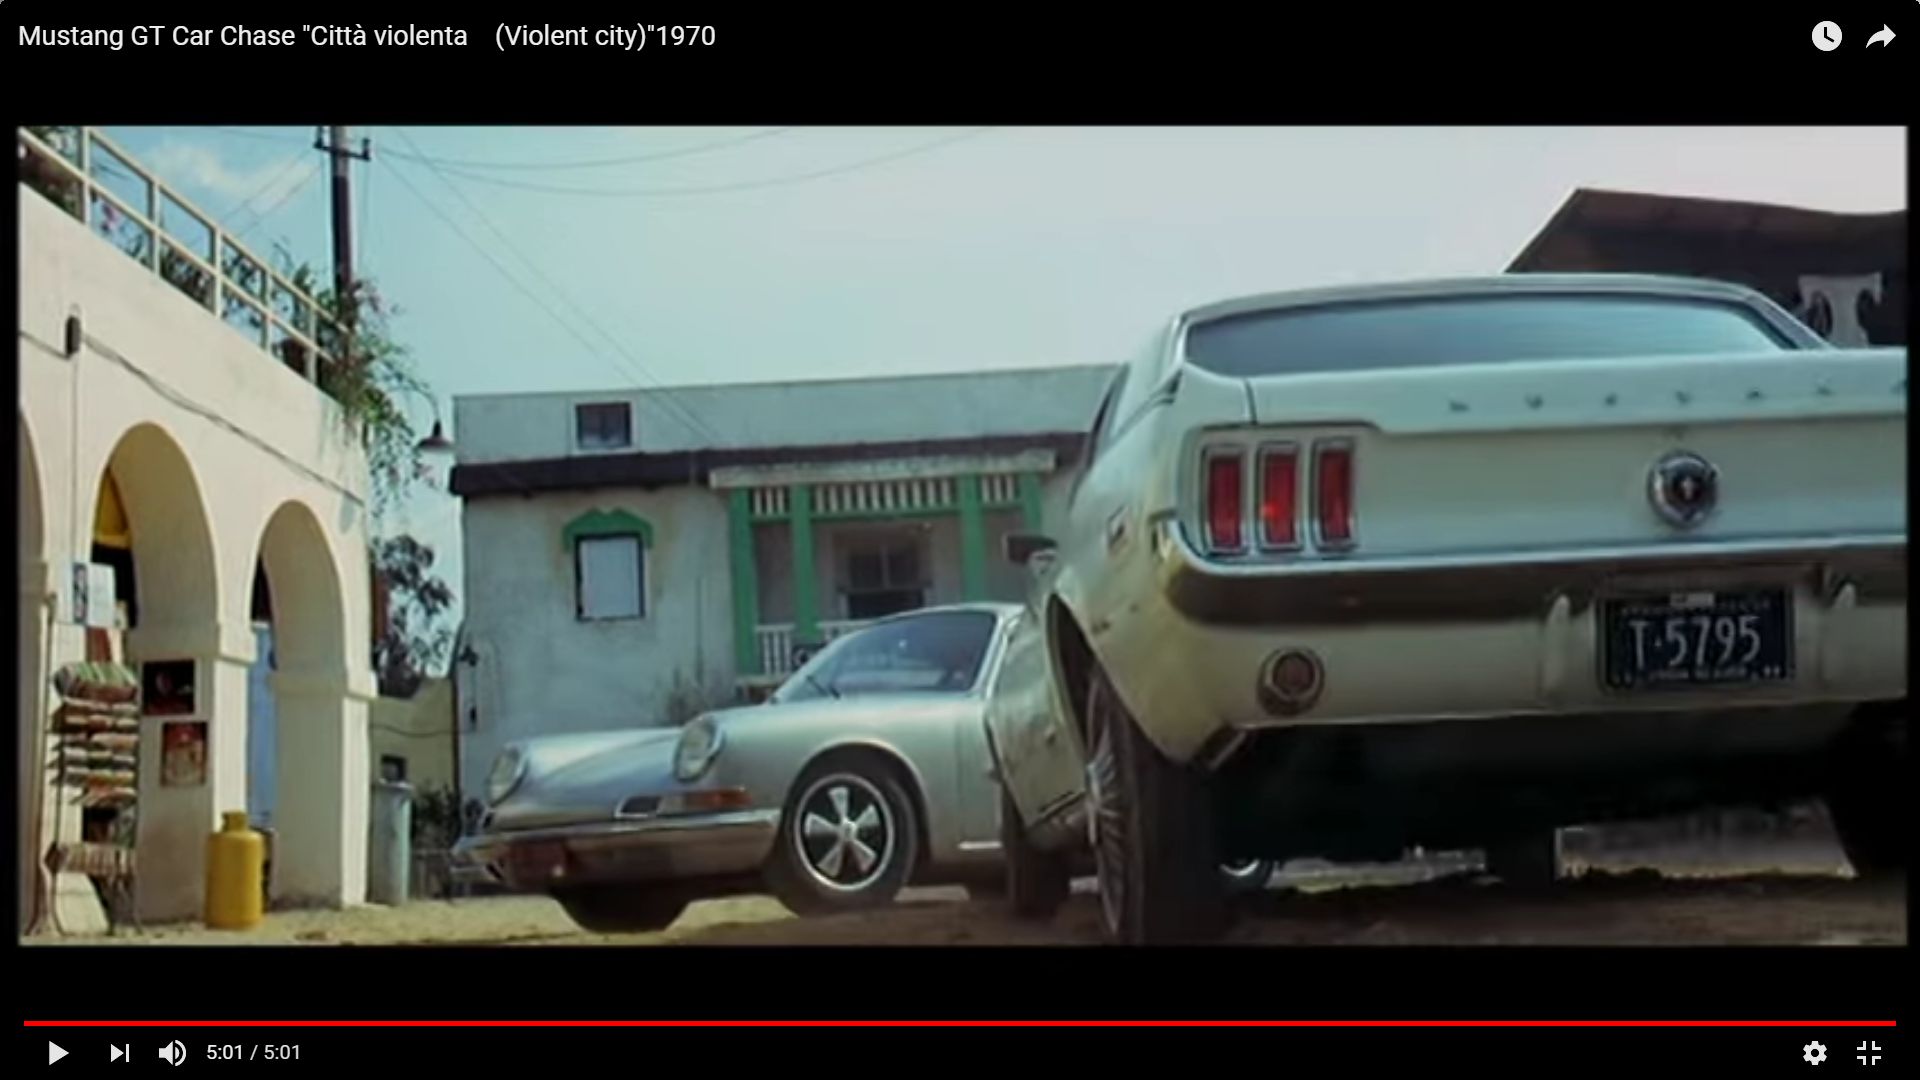 Mustang GT Car Chase, film la cité de la violence Nouve137